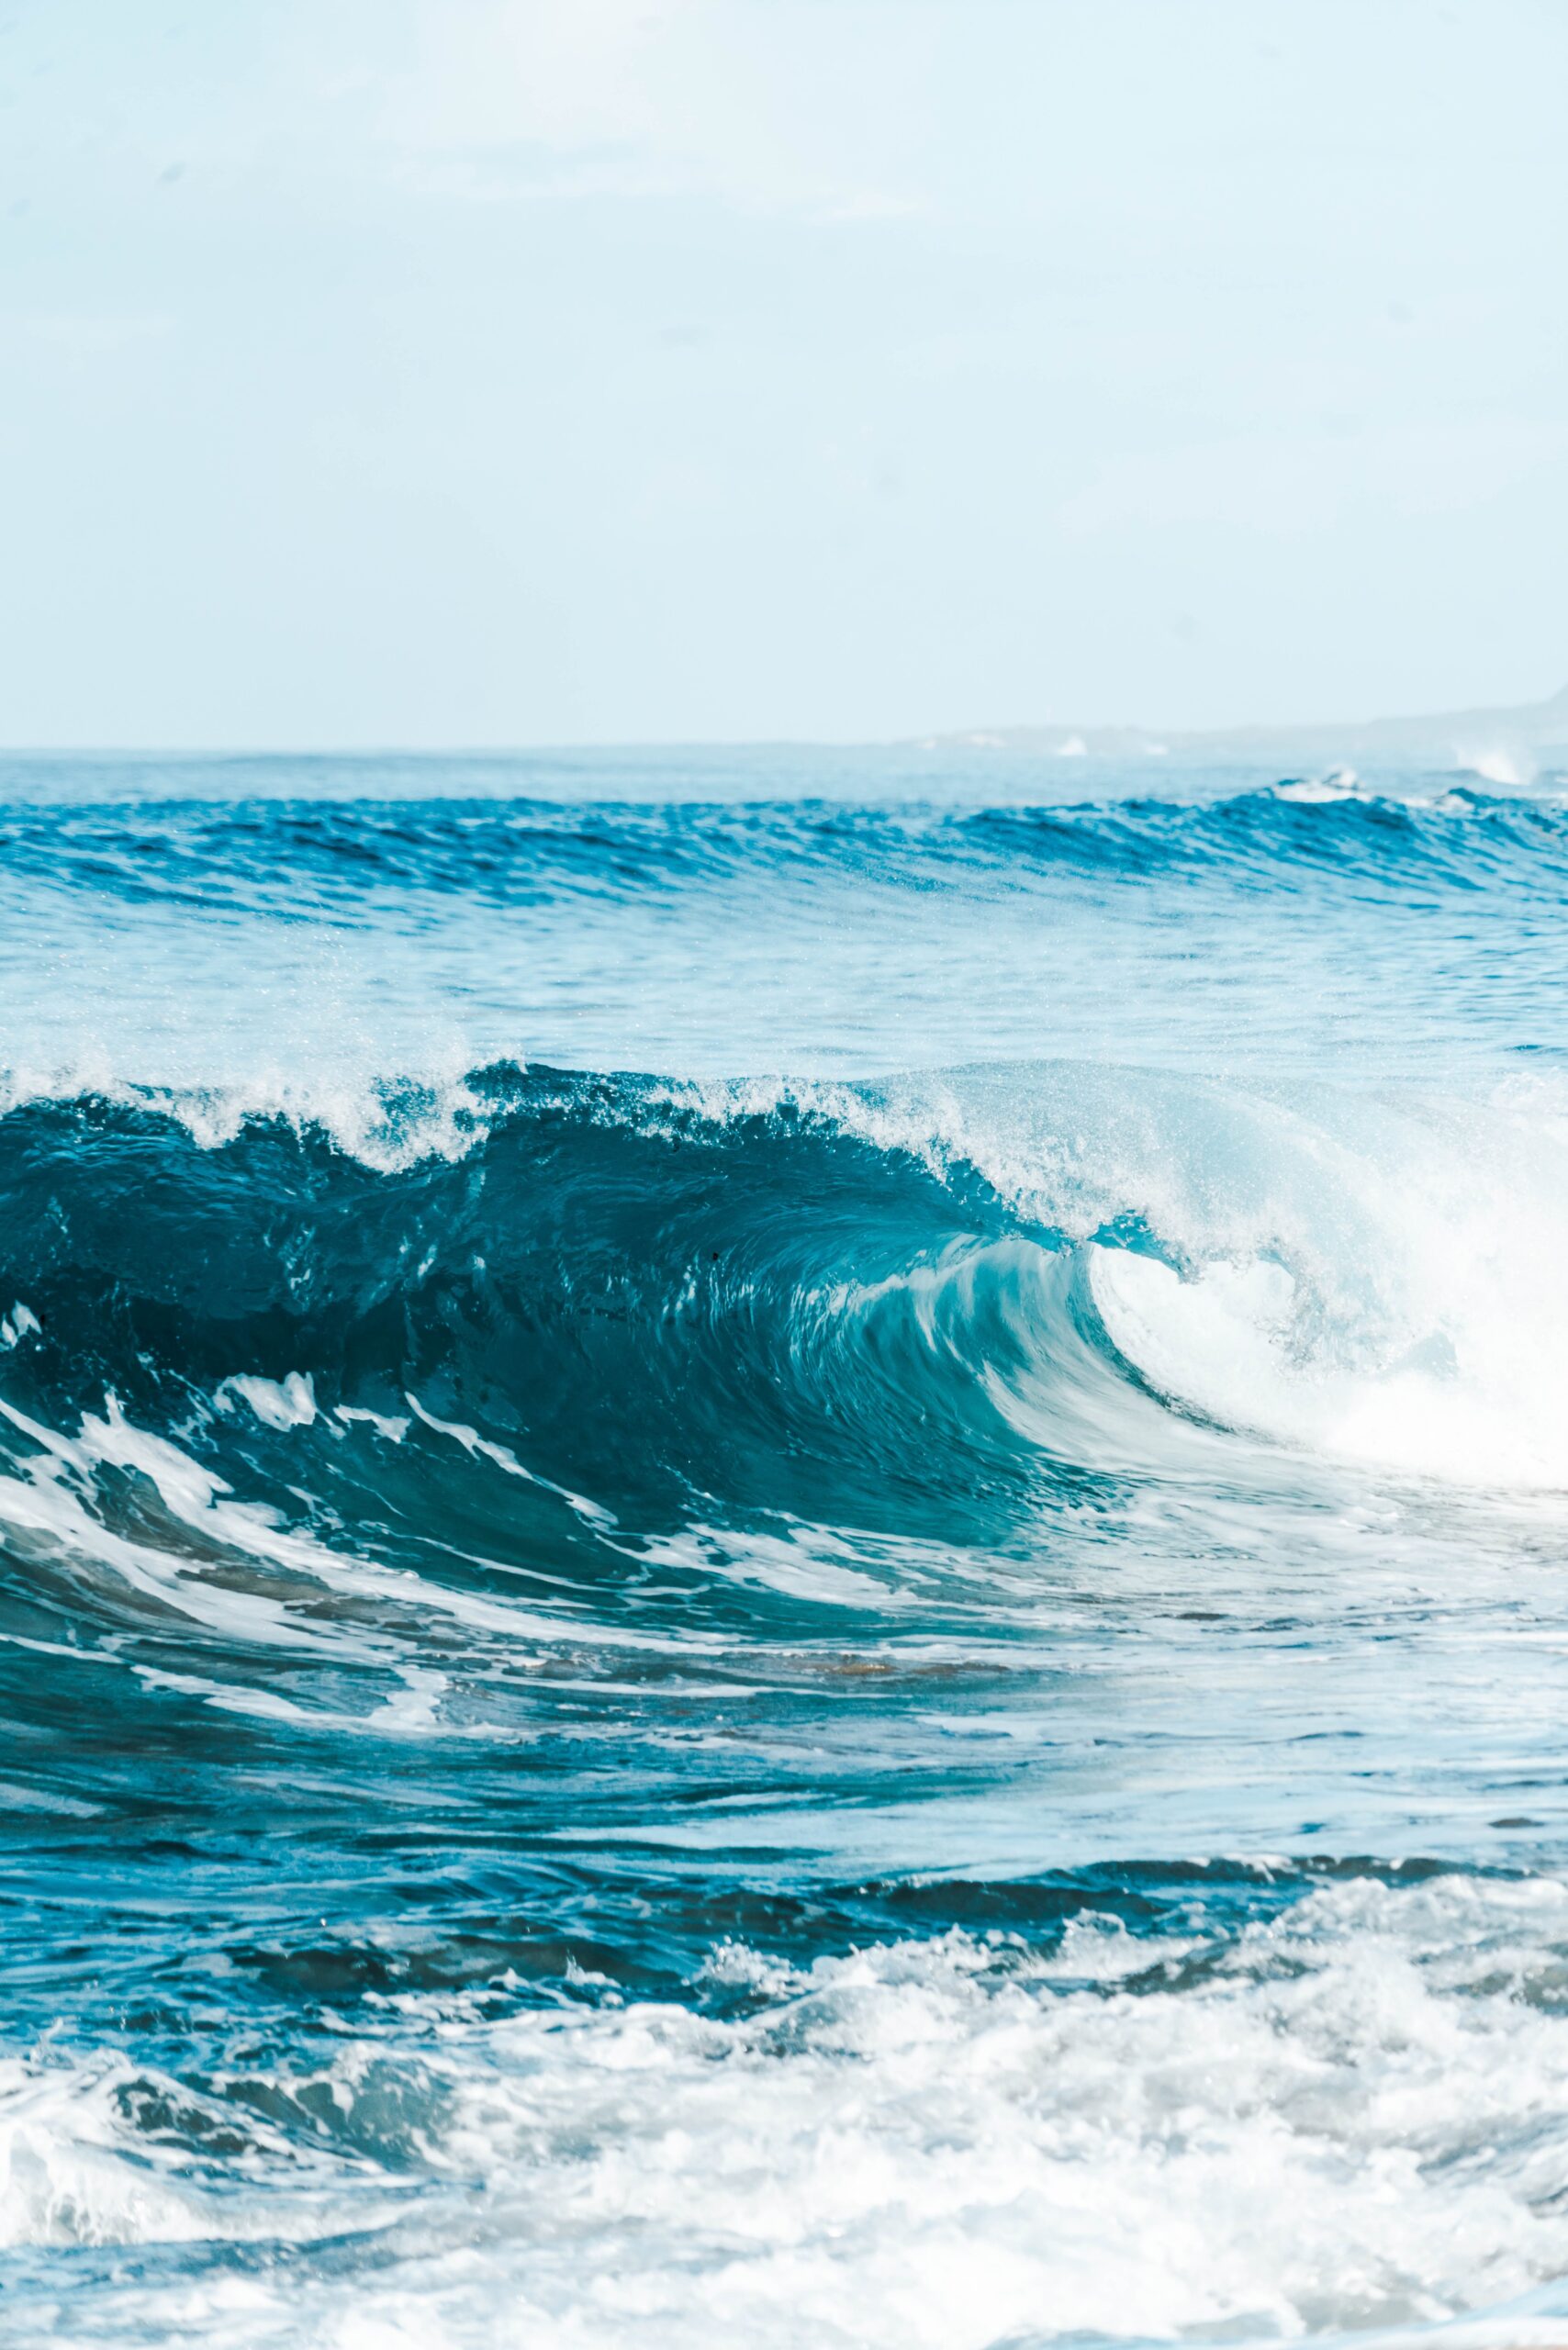 Création des vagues : comment se forment-elles ?